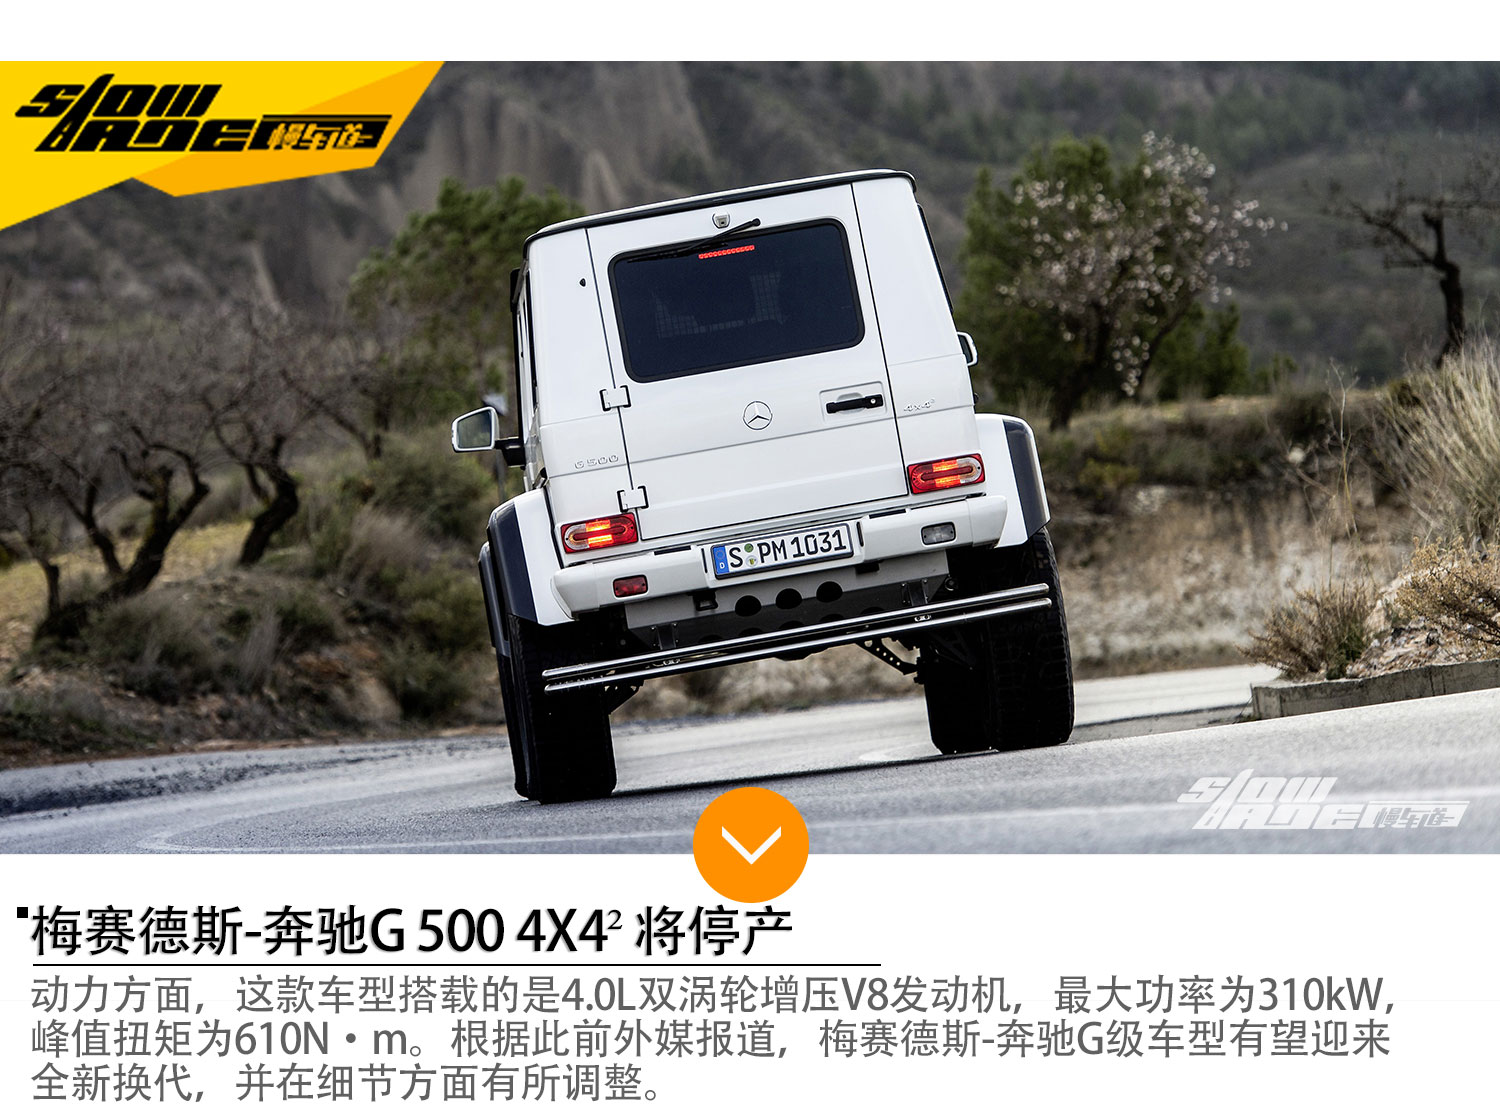 奔驰G 500 4X4²将停产 或将迎来换代   